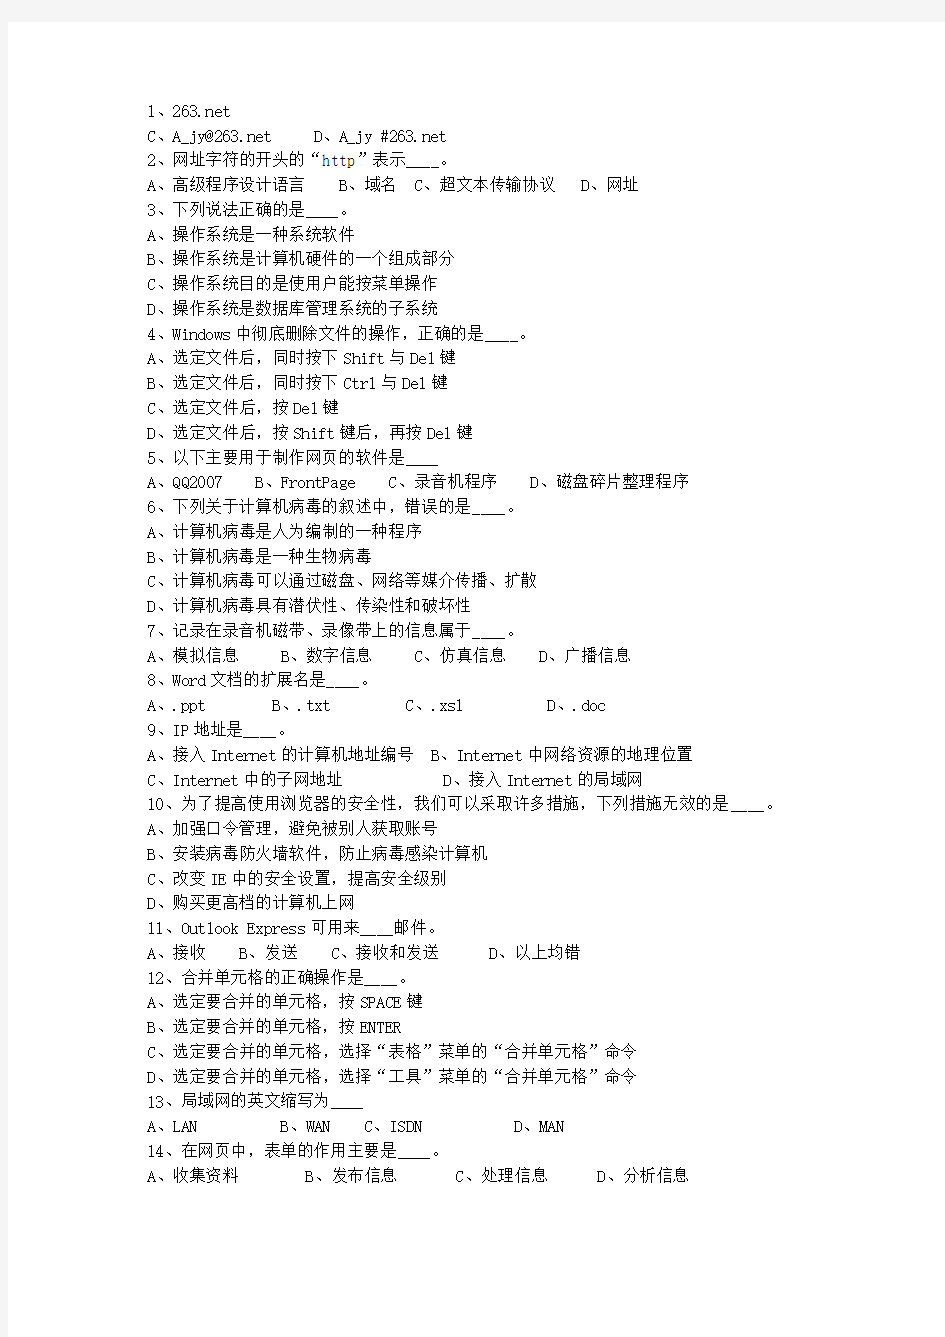 2010广东省公务员考试公共基础知识(必备资料)